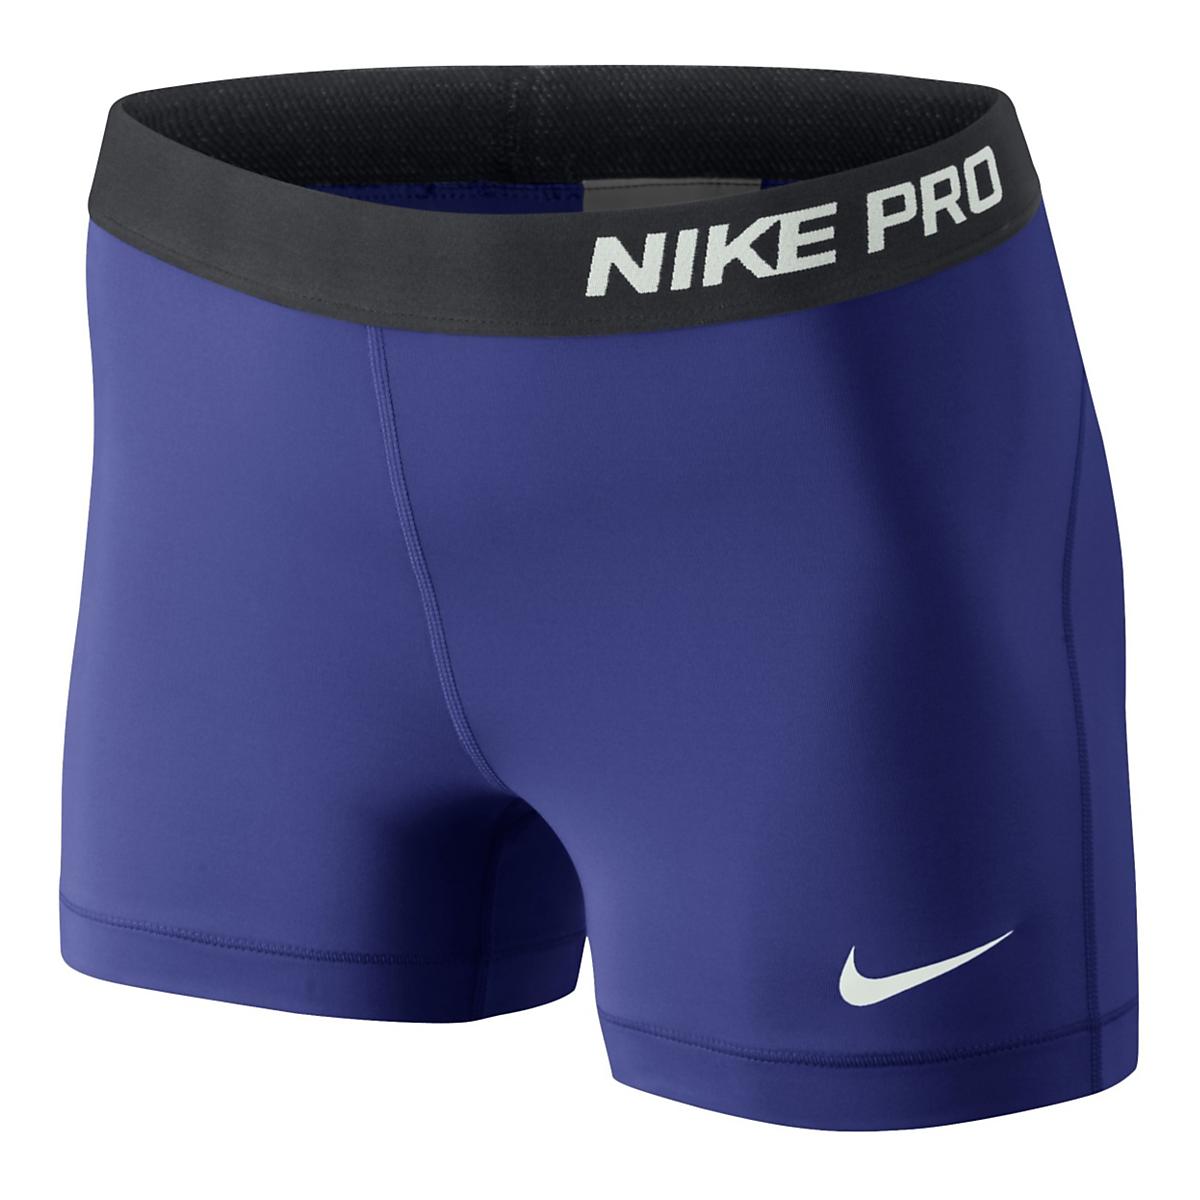 Womens Nike Pro 3